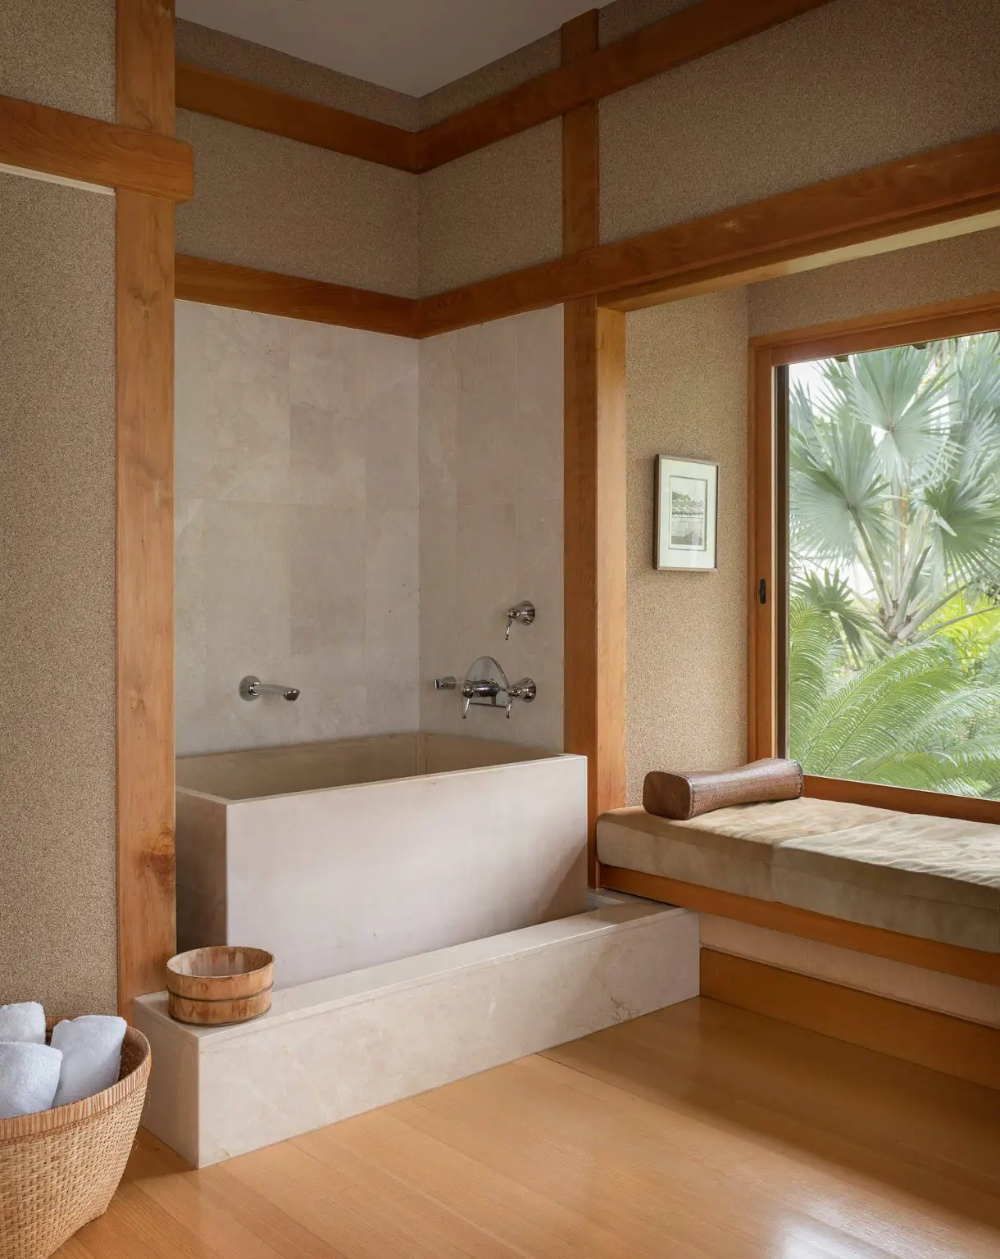 Japanese Style Soaking Tub